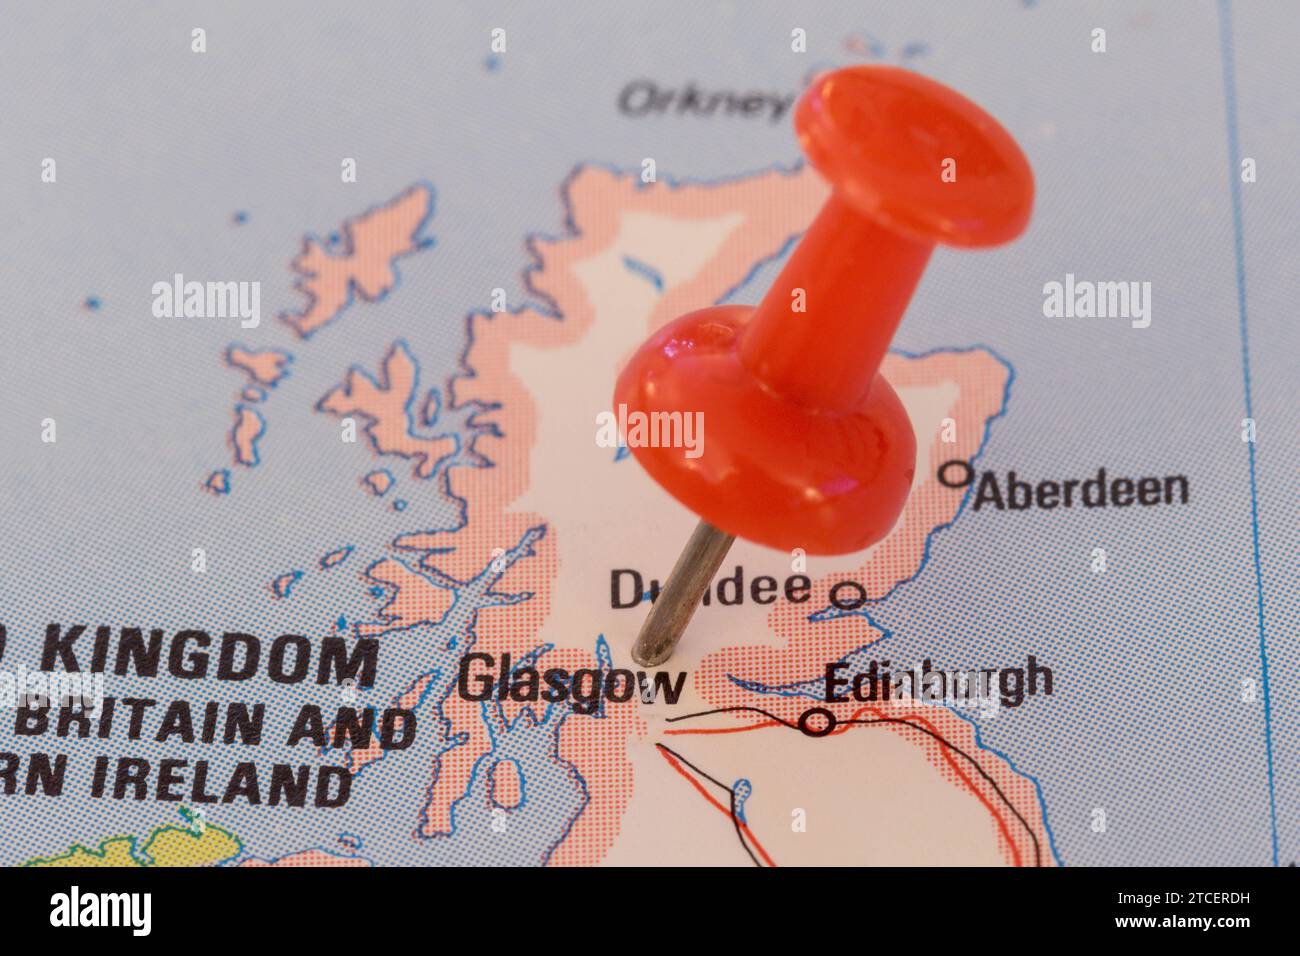 Una spilla rossa si è bloccata in una mappa dell'Europa occidentale, indicando la posizione di Glasgow Foto Stock